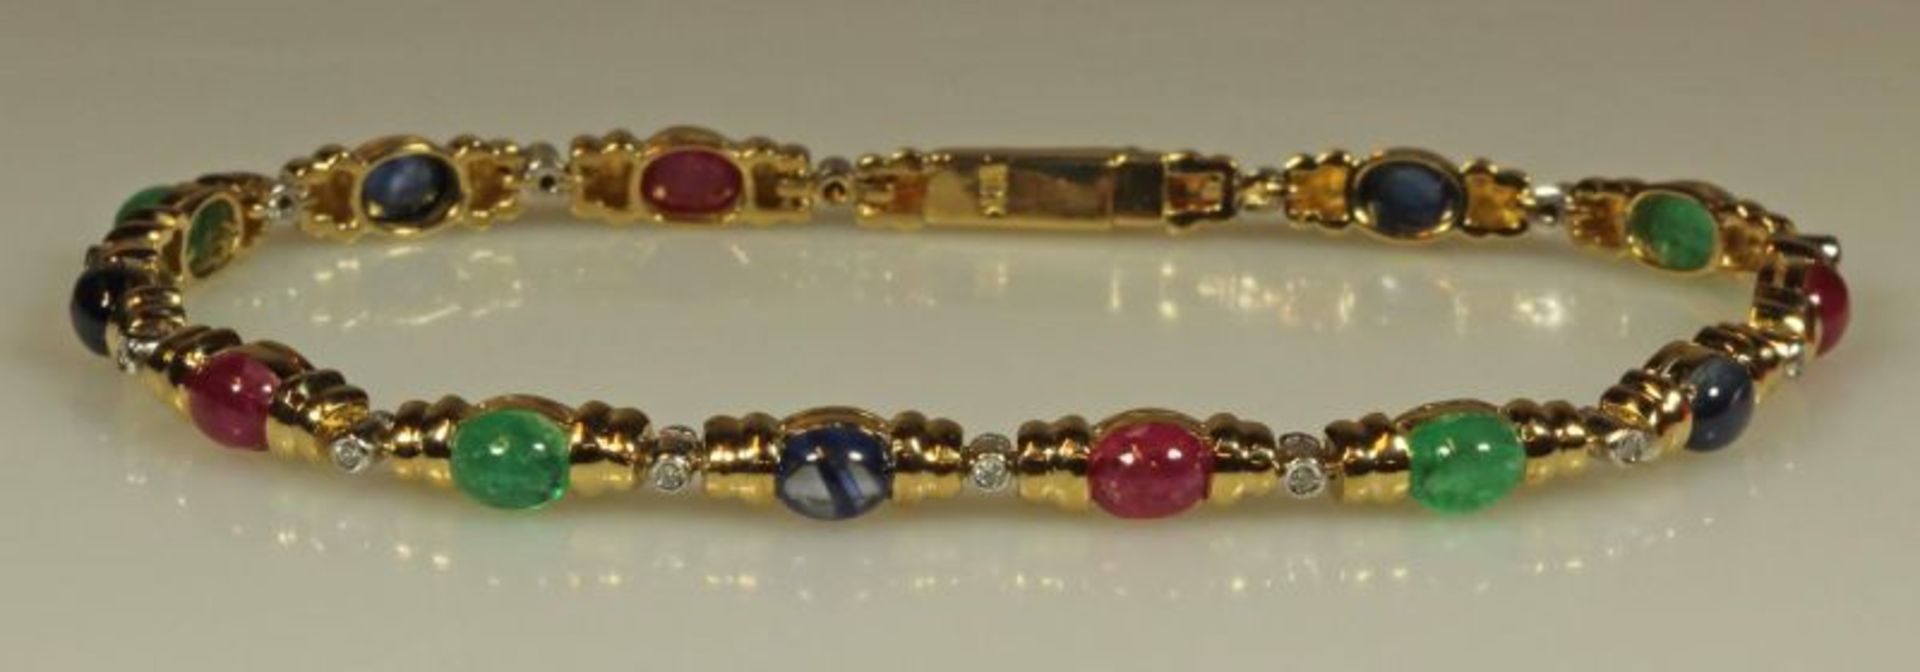 Armband, GG 750, 5 Saphir-, 4 Smaragd- und 4 Rubin-Cabochons, 14 kleine Besatzdiamanten, 18.5 cm